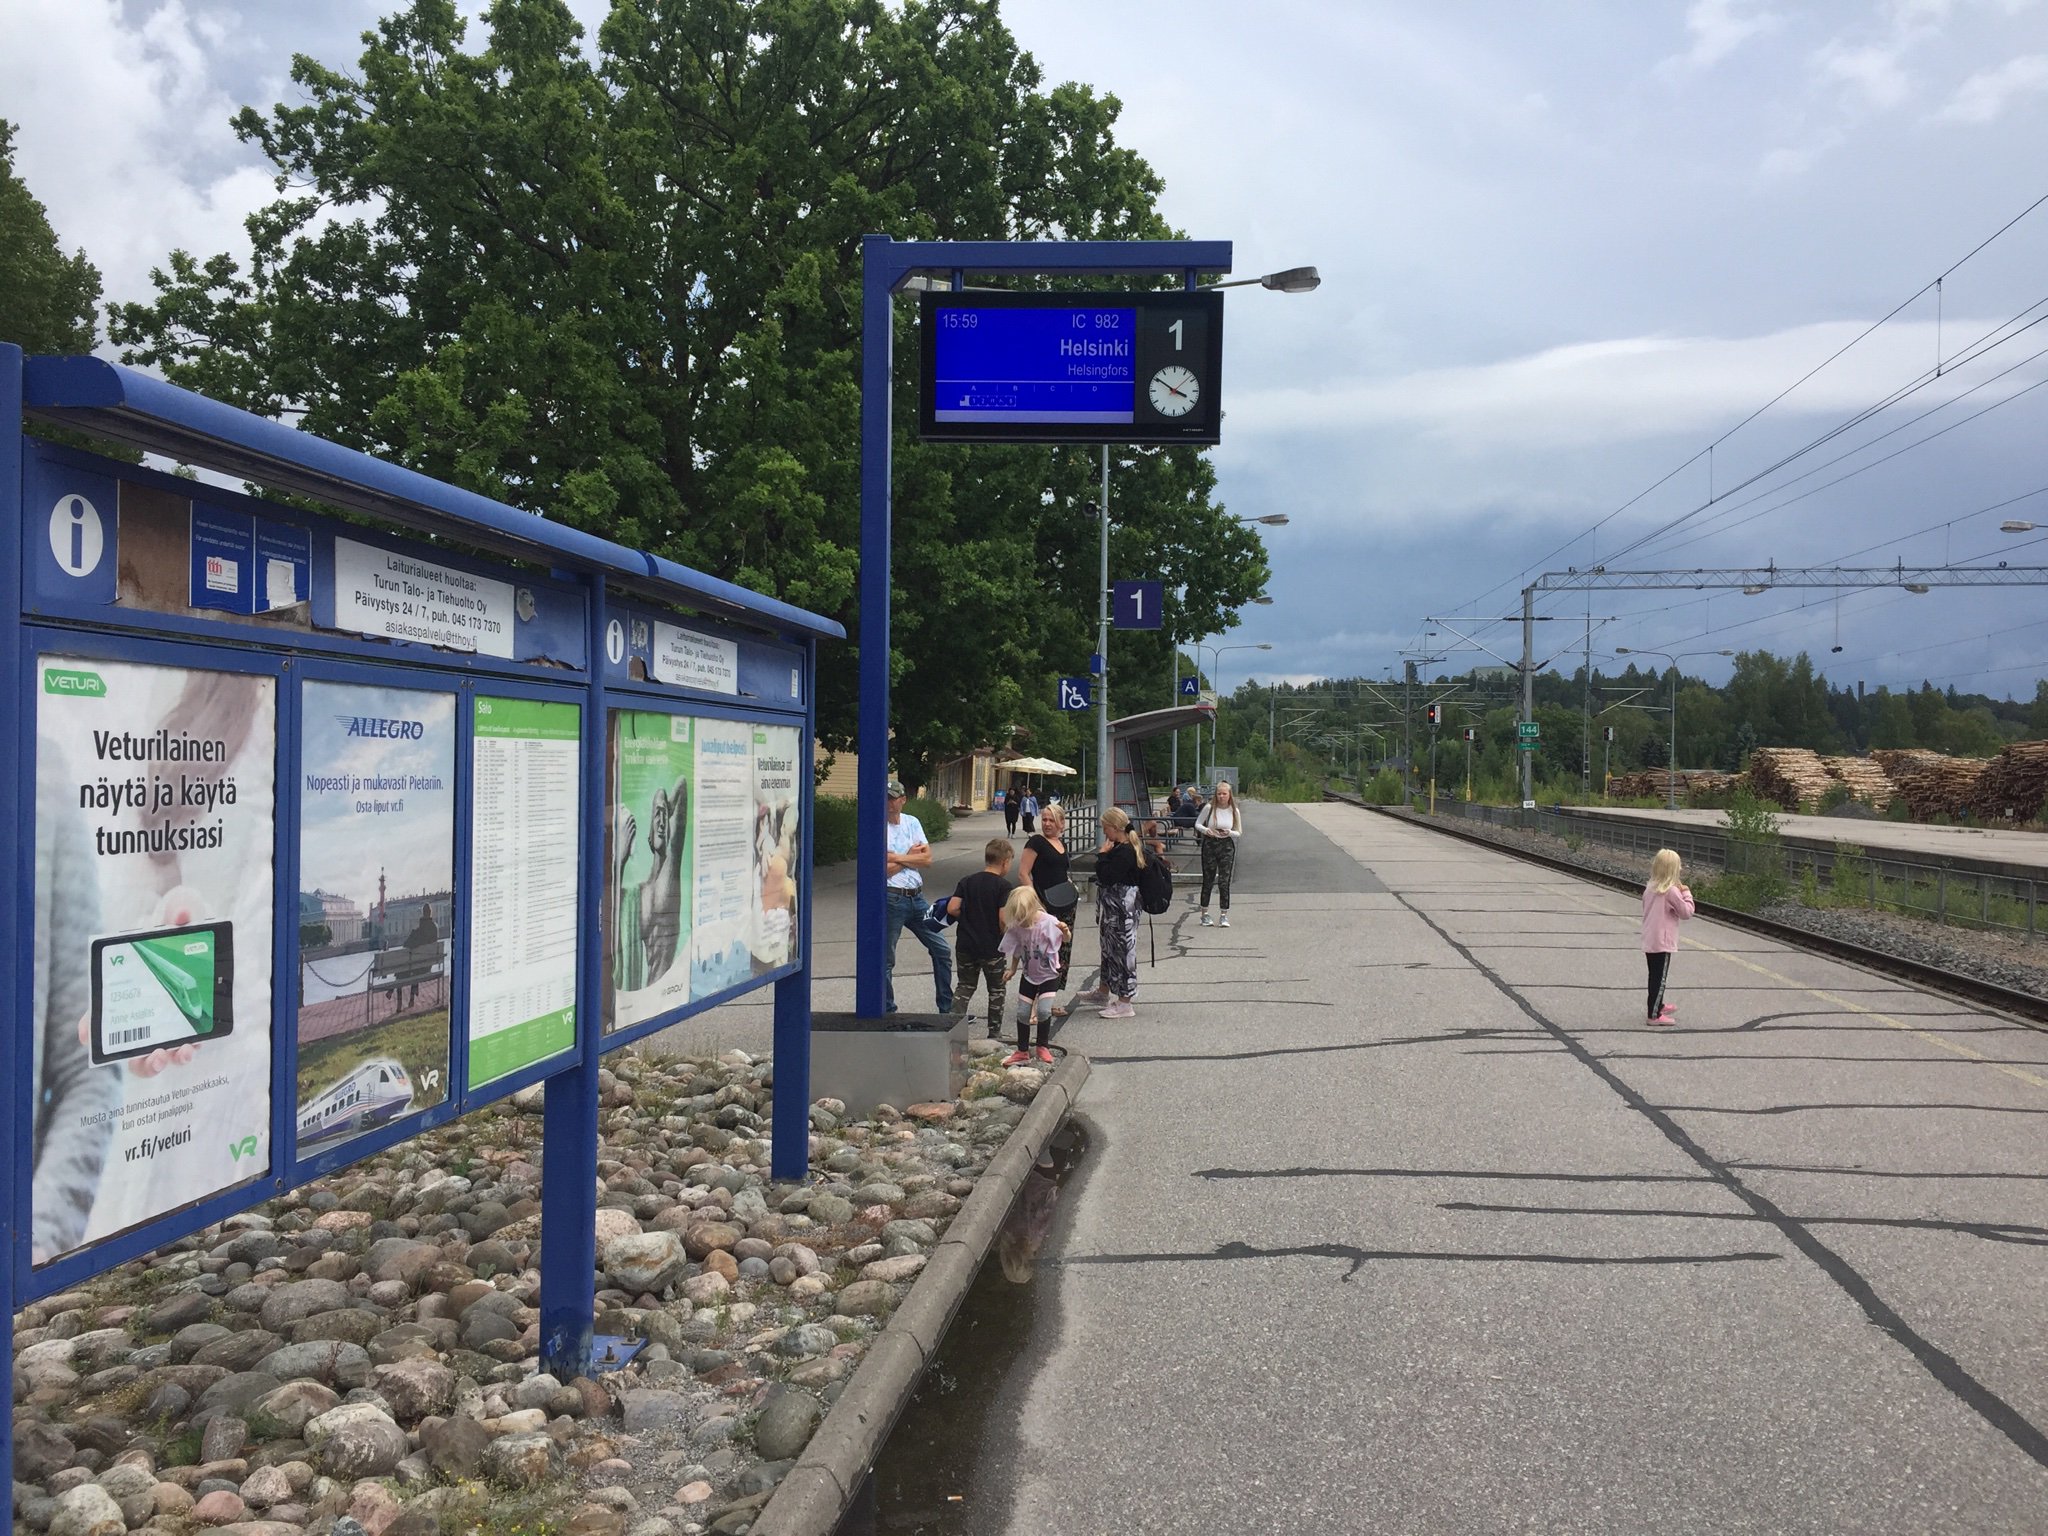 北欧旅行フィンツアー フィンランド 夏旅 マチルデダールを後にしてバス Vr国鉄を乗り継いでヘルシンキに戻ってきました がまだまだ田舎旅は続く ヘルシンキ駅で地下鉄に乗り継いでヴォサーリへ 乗り物に自転車を普通に持込めるのがいい